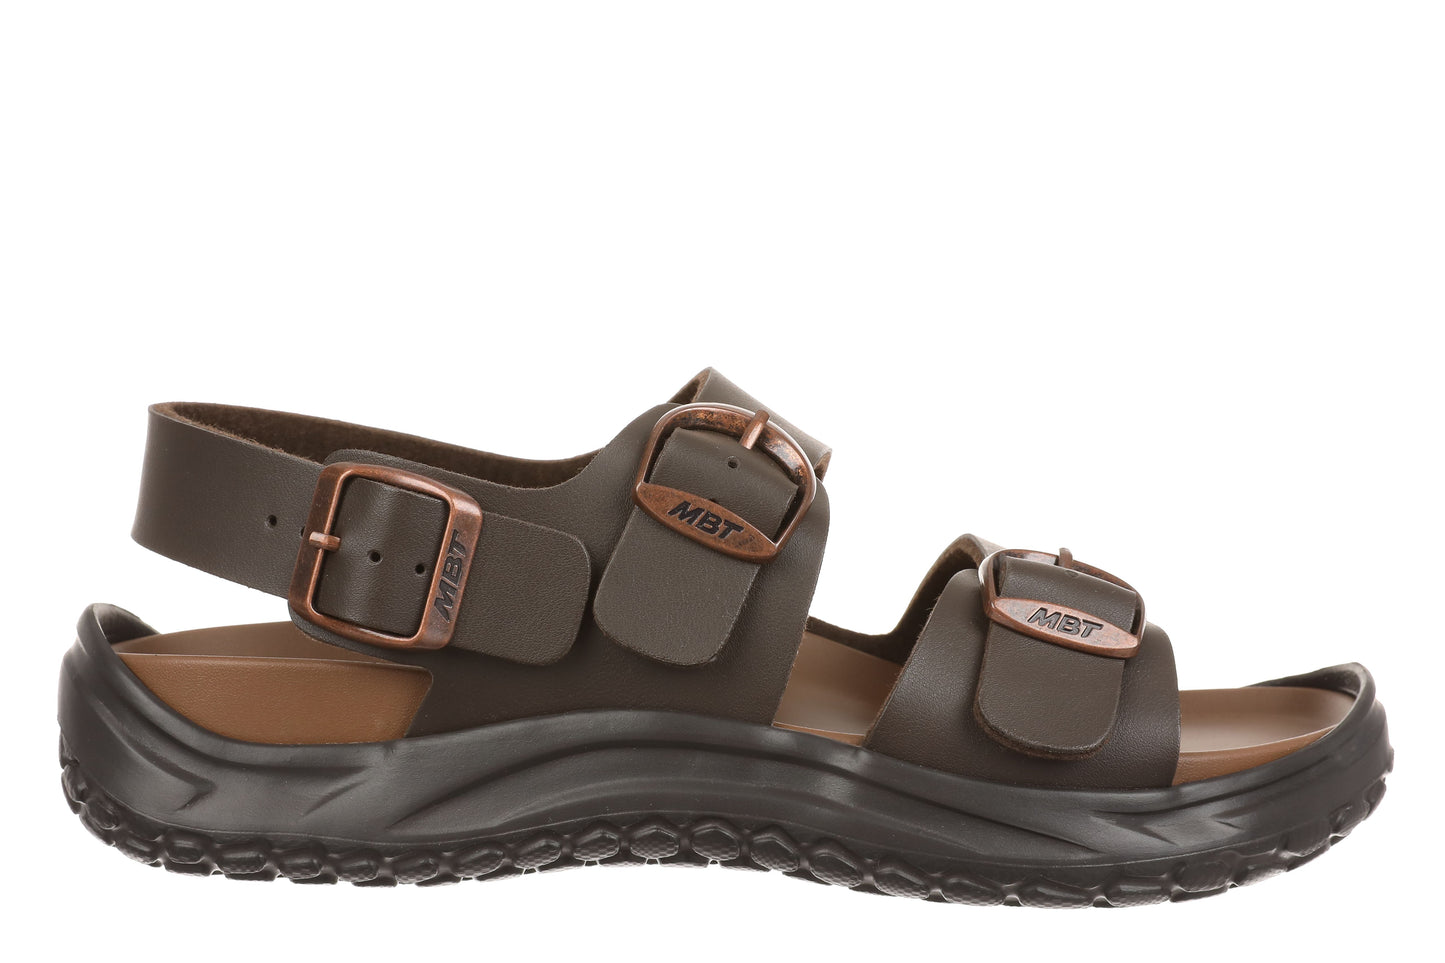 MBT Gini Sandals (Arch Support, Light Weight 2 Colors – HillsideFootgear